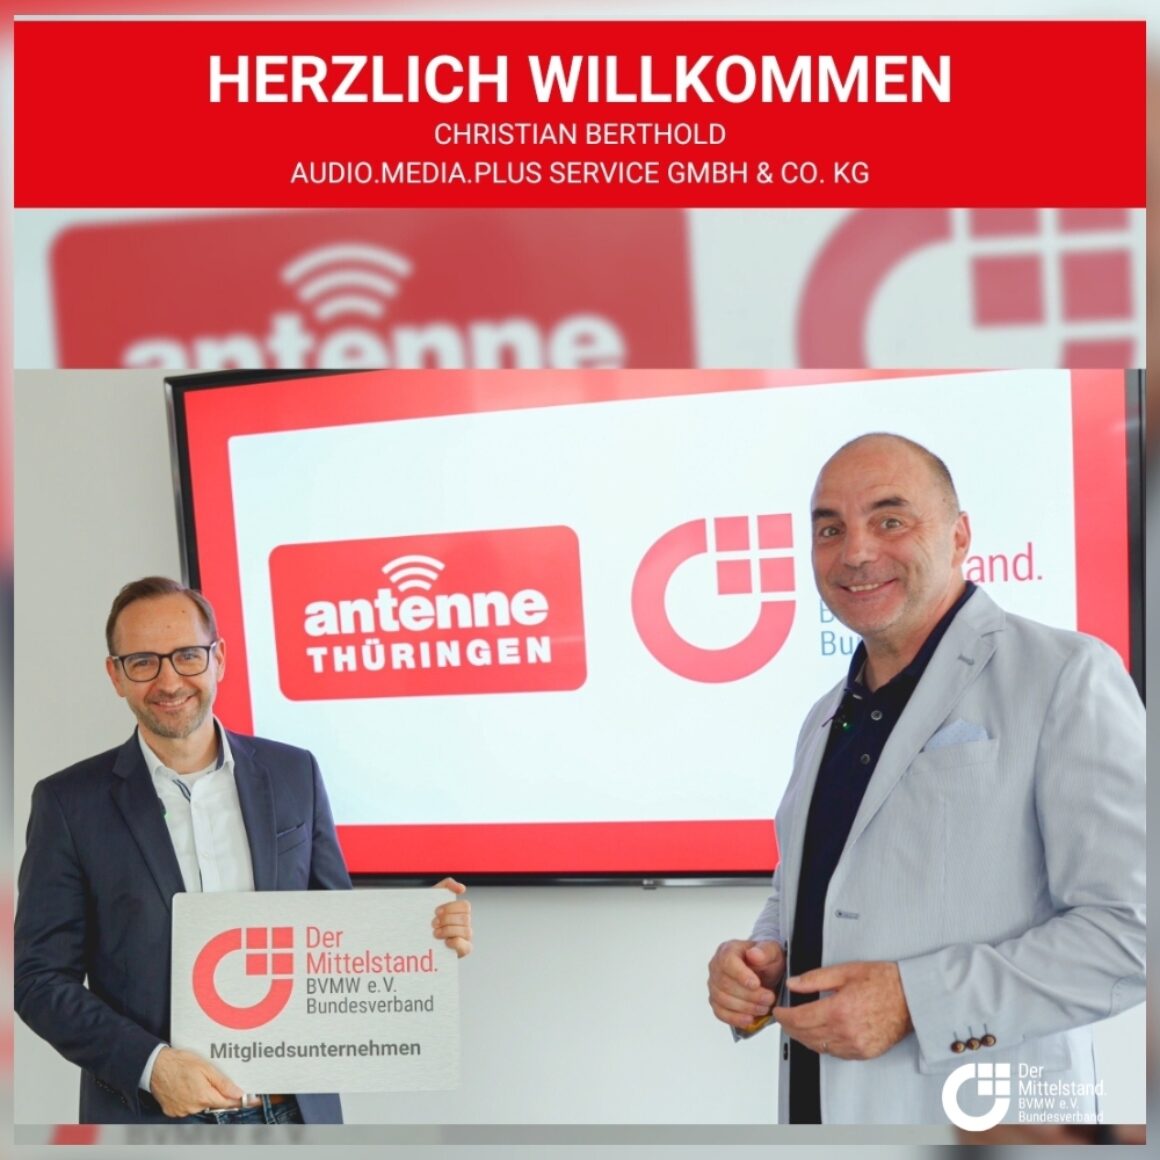 Herzlich Willkommen audio media plus service GmbH Co KG